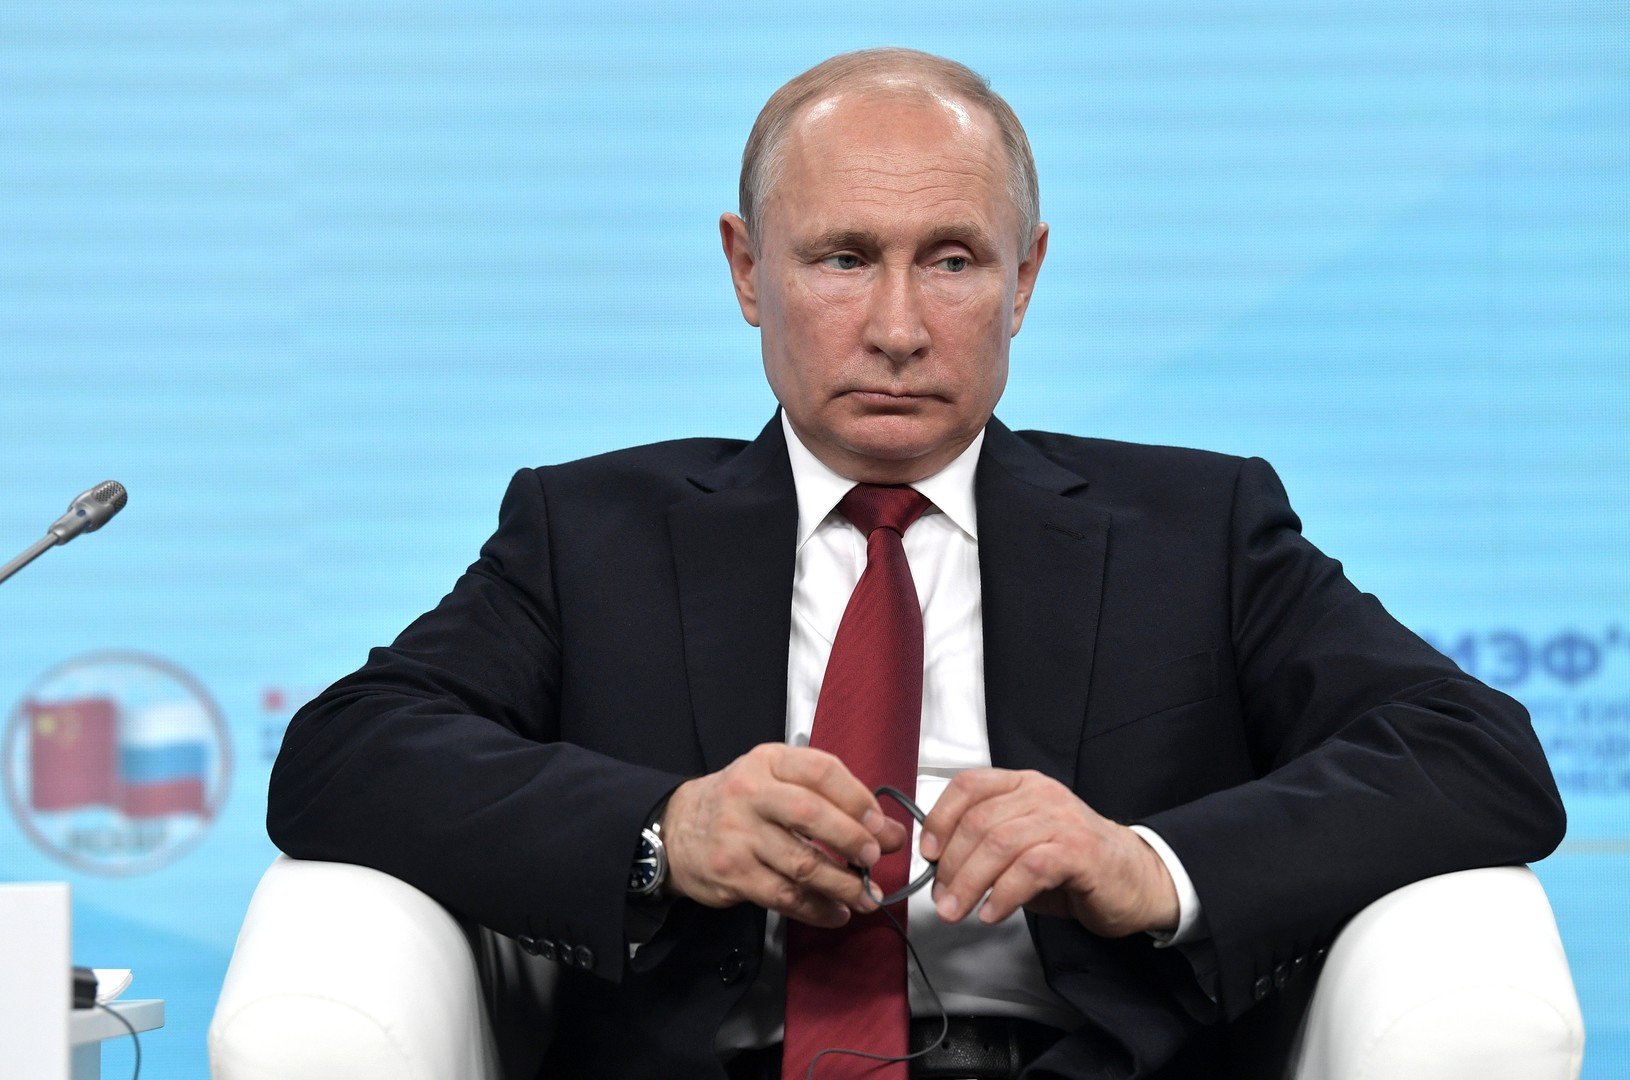 بوتين: روسيا ستدعم رئيس مولدوفا وشركاءه للتخلص من الأوليغارشيا التي اغتصبت السلطة